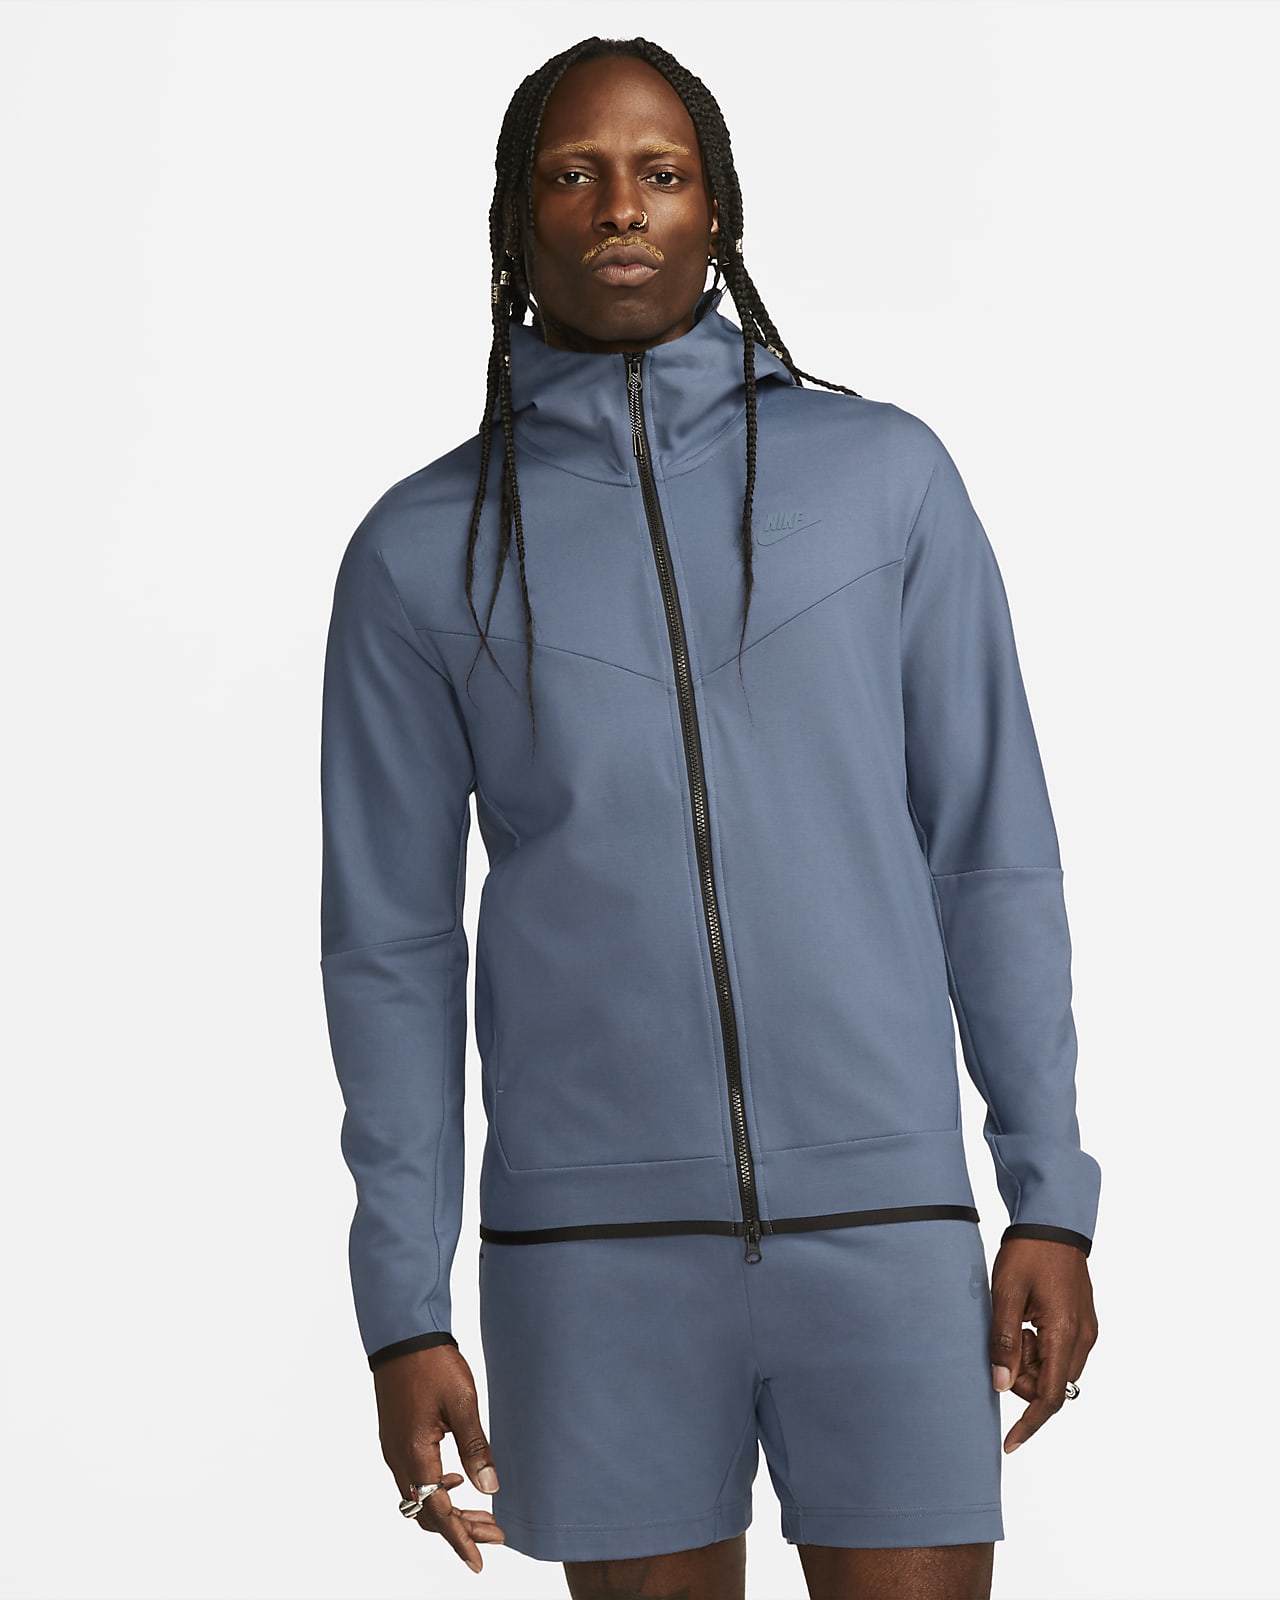 Nike Sportswear Tech Fleece Lightweight Men's Full-Zip Hoodie Sweatshirt.  Nike LU